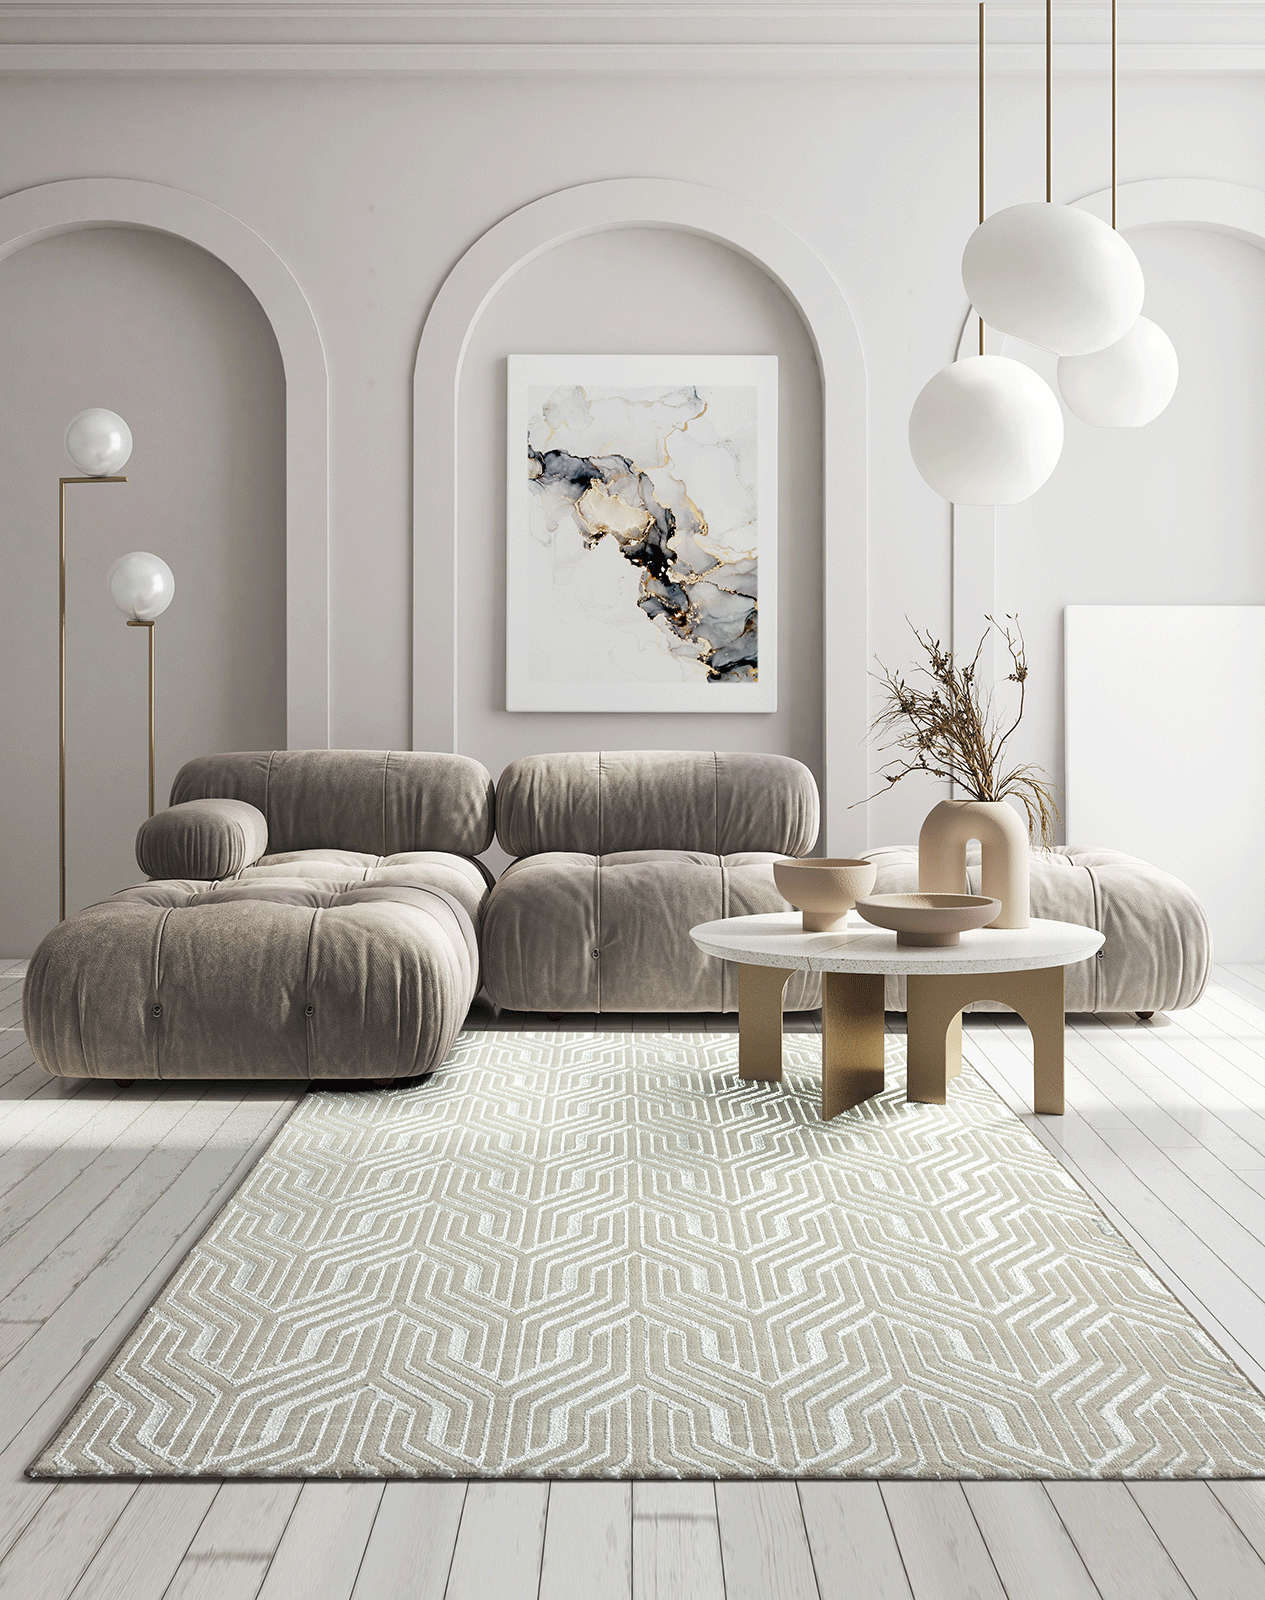             Soft pile carpet in cream - 290 x 200 cm
        